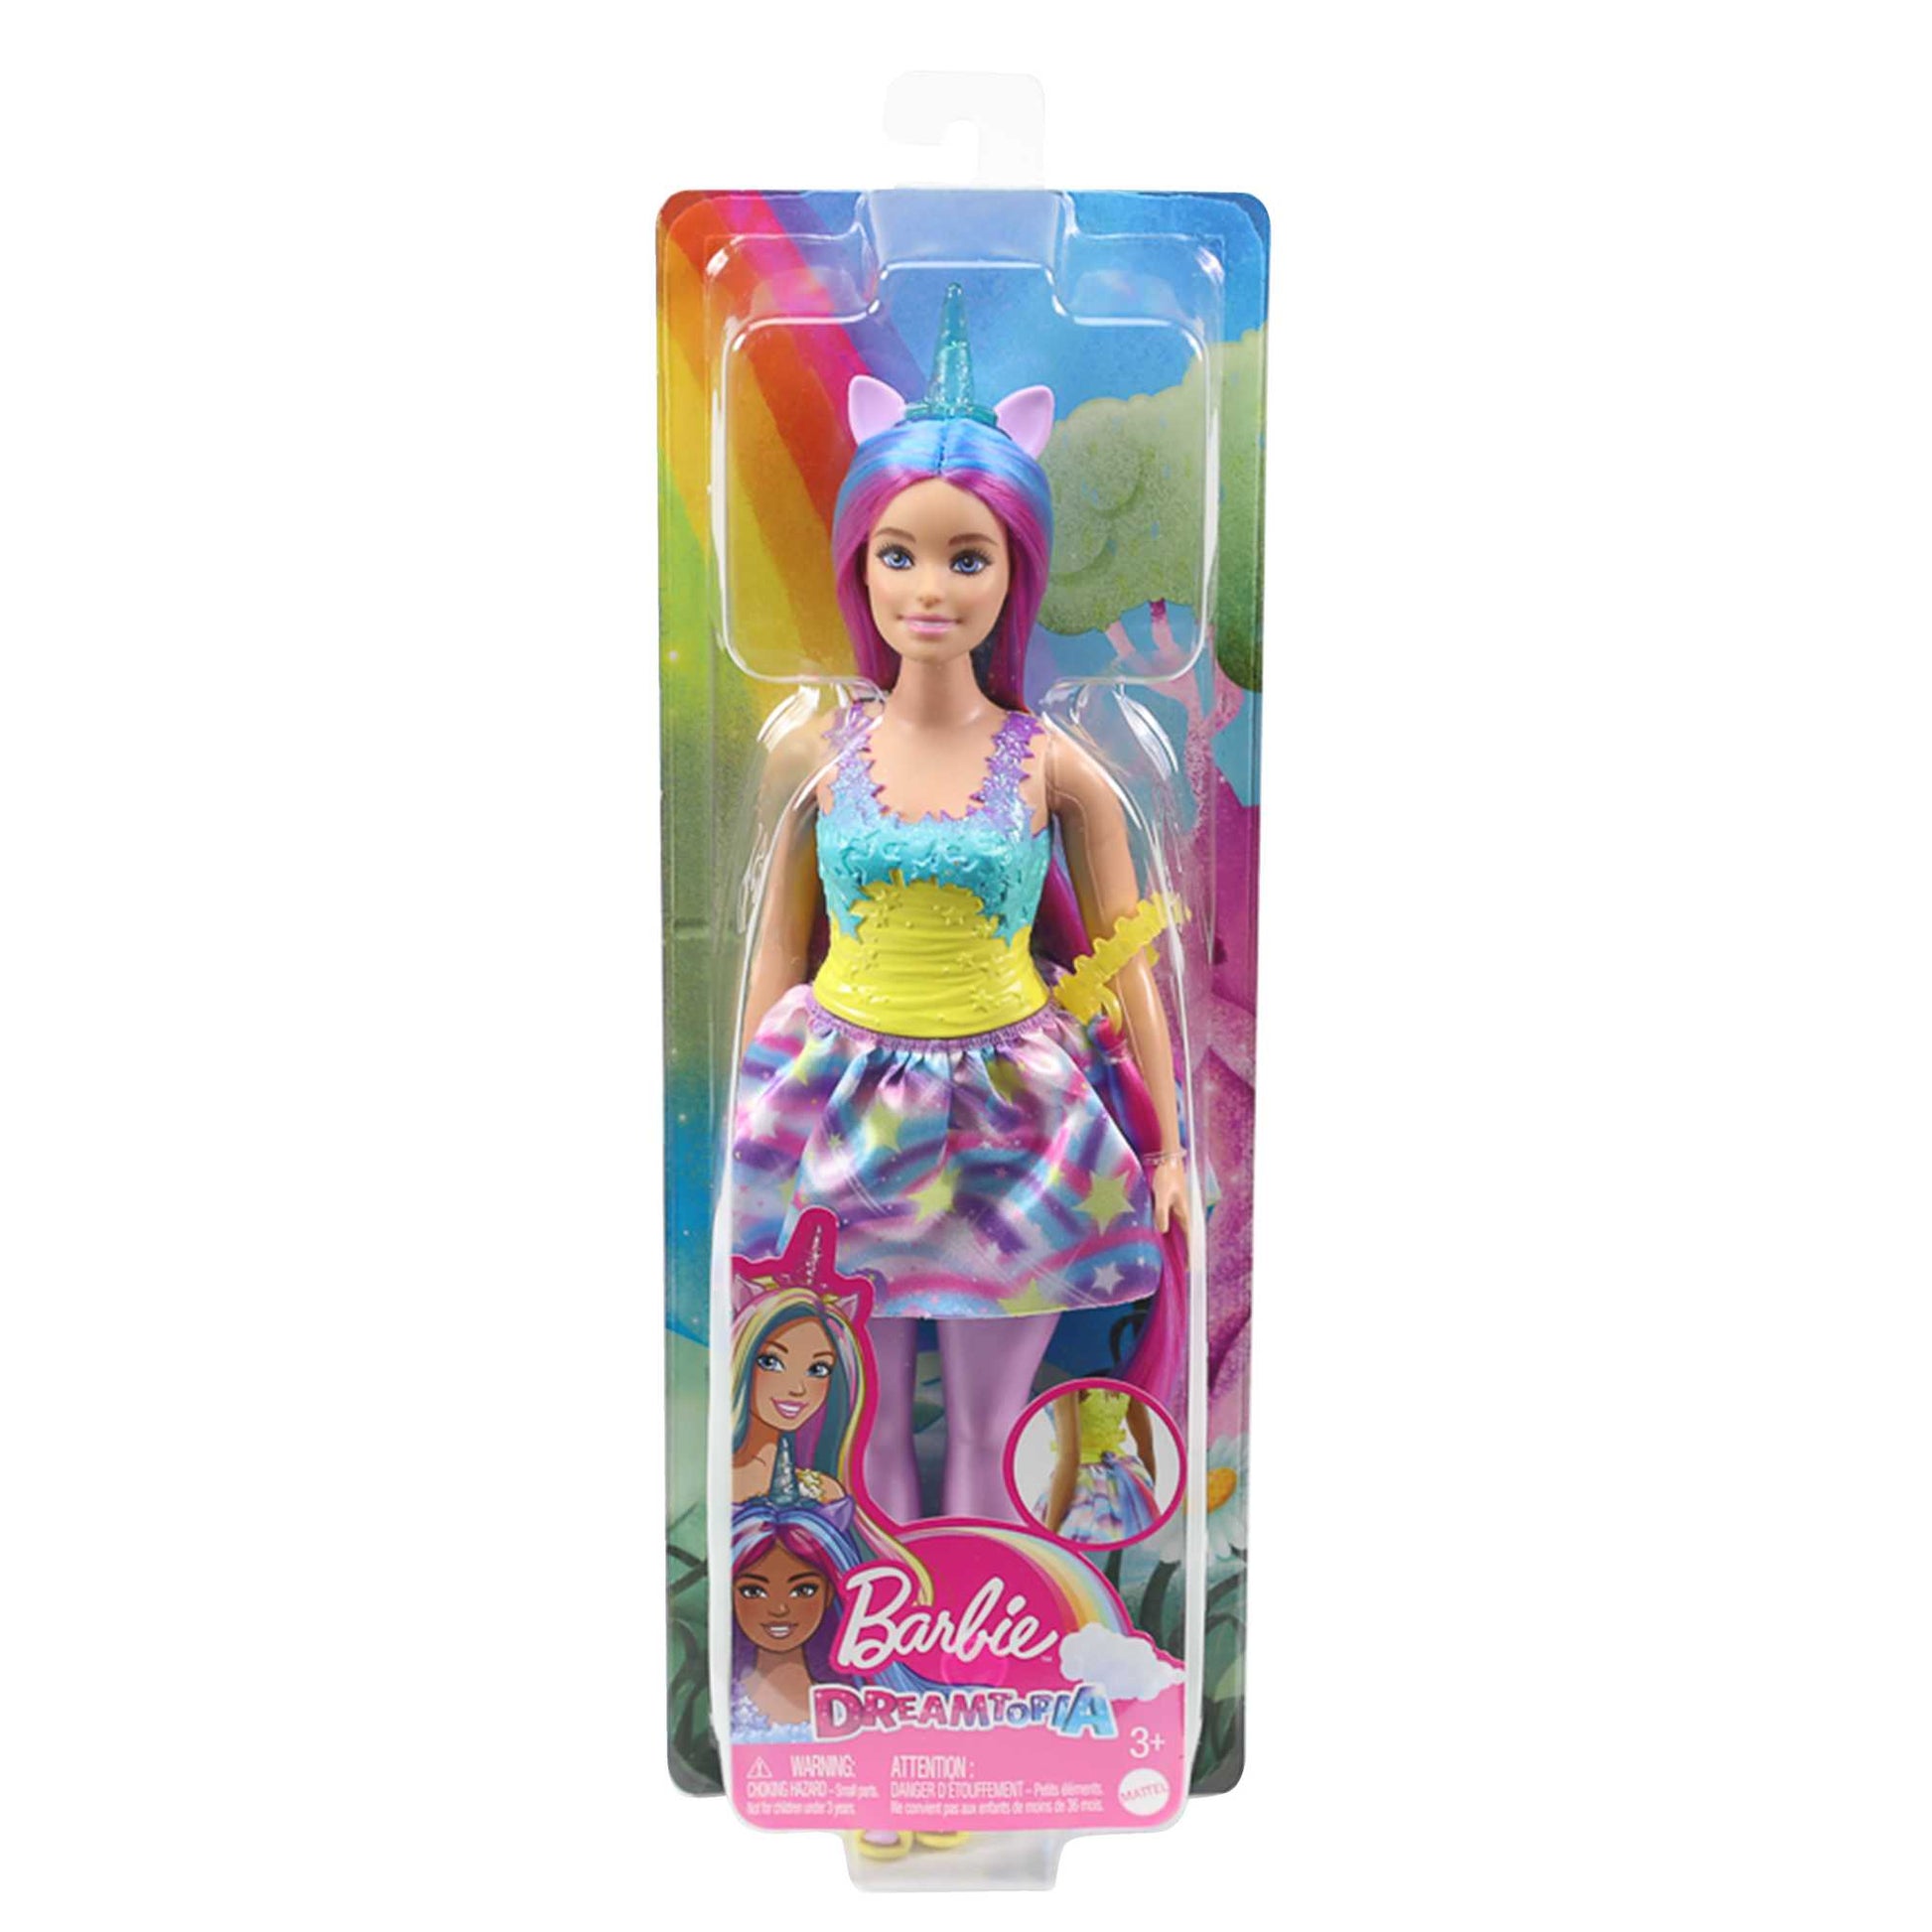 Barbie Dreamtopia - Muñeca de unicornio (pelo rosa y amarillo), con falda,  cola de unicornio extraíble y diadema, juguete para niños a partir de 3